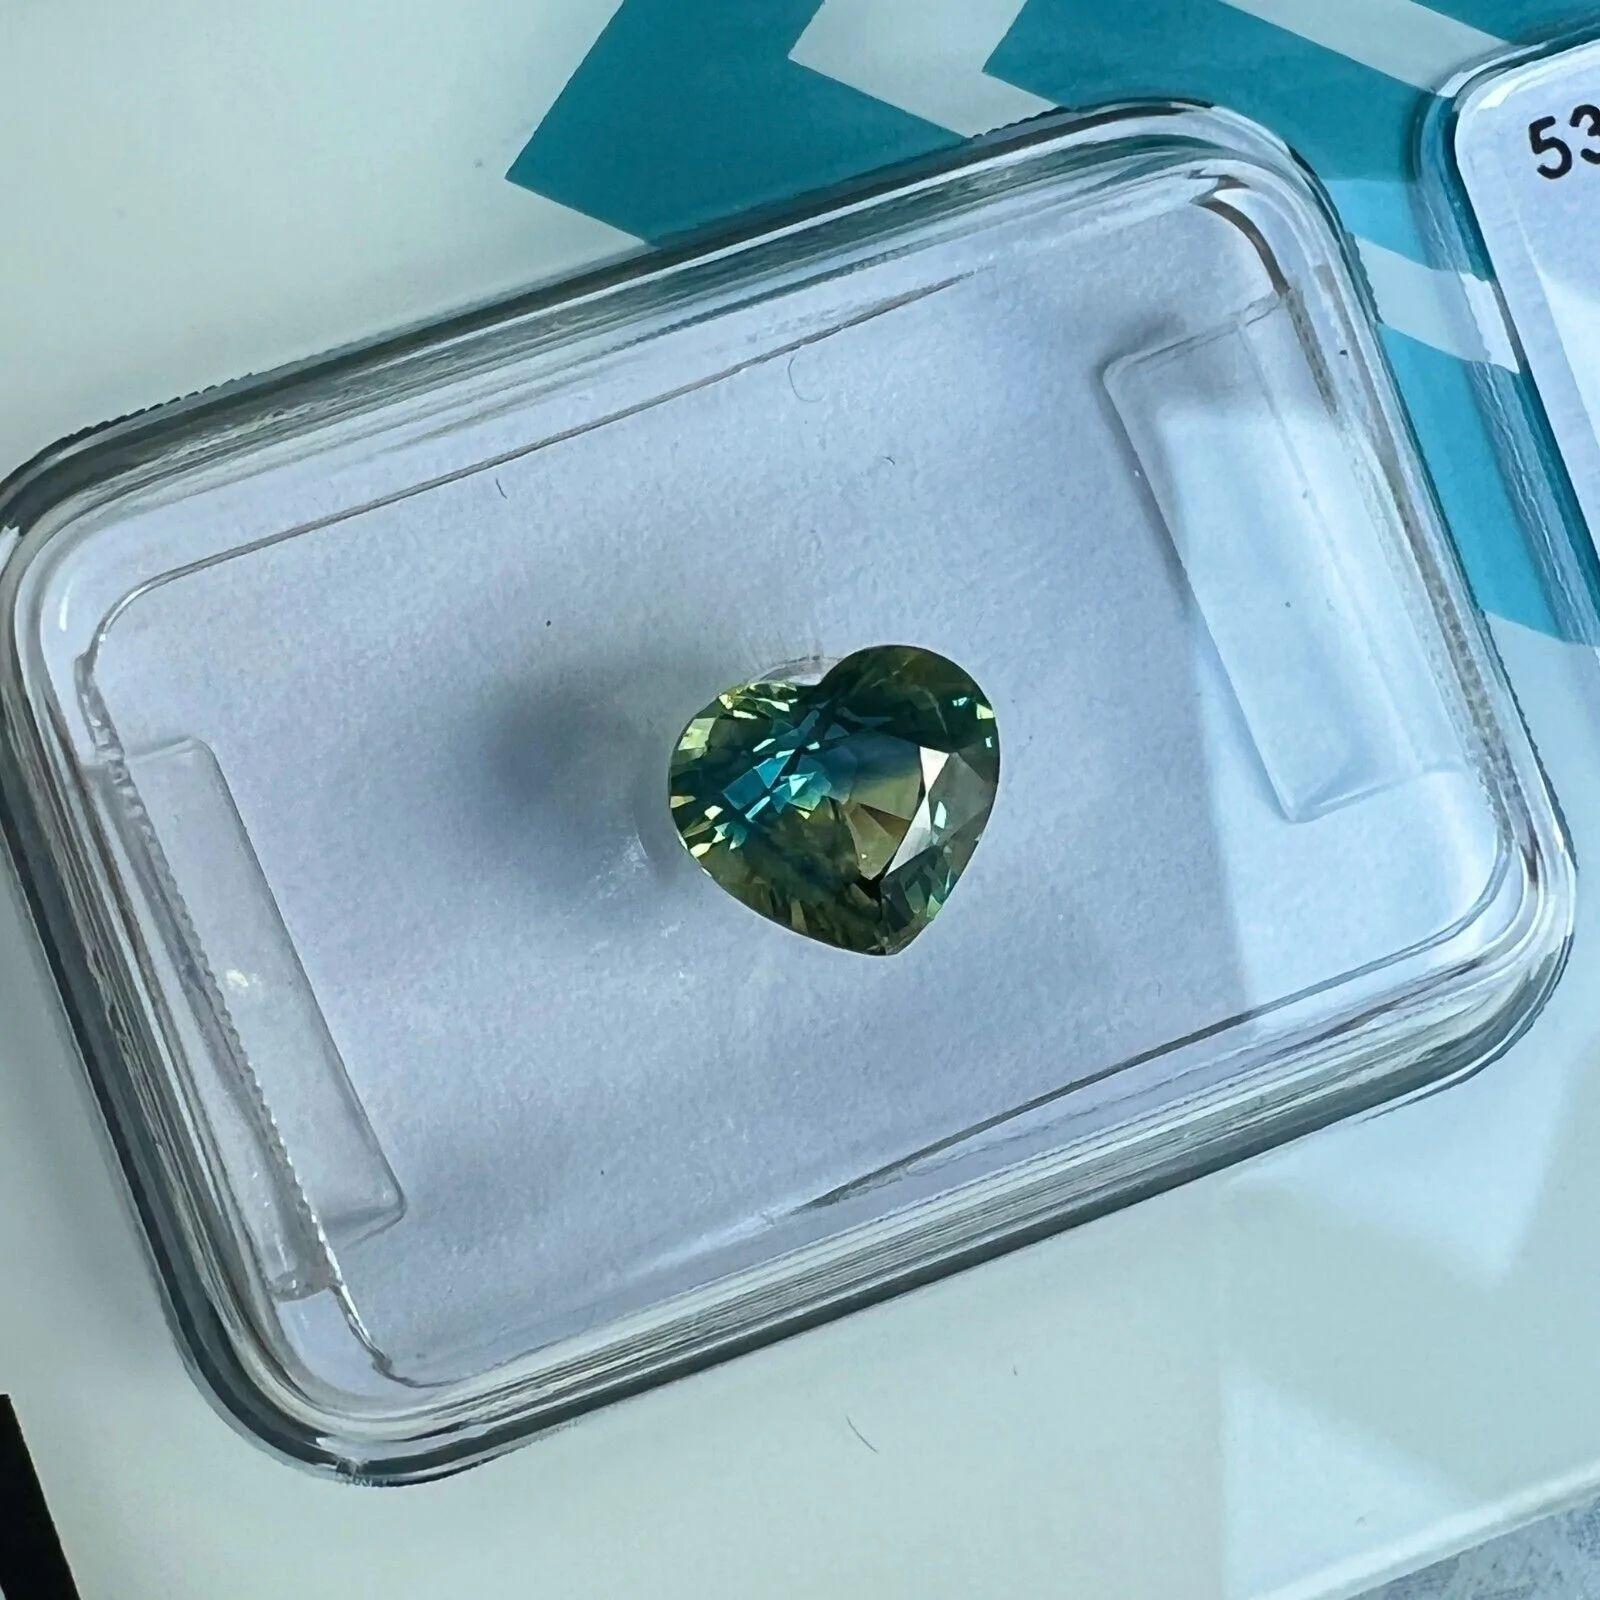 1,01ct Bi Farbe Blau Grün Australischer Saphir No Heat Heart Cut IGI Zertifiziert

Natürlicher australischer zweifarbiger blauer/grünlich gelber Saphir.
1,01 Karat mit einem einzigartigen blau/grünlich-gelben Bi-Color-Effekt, sehr selten und